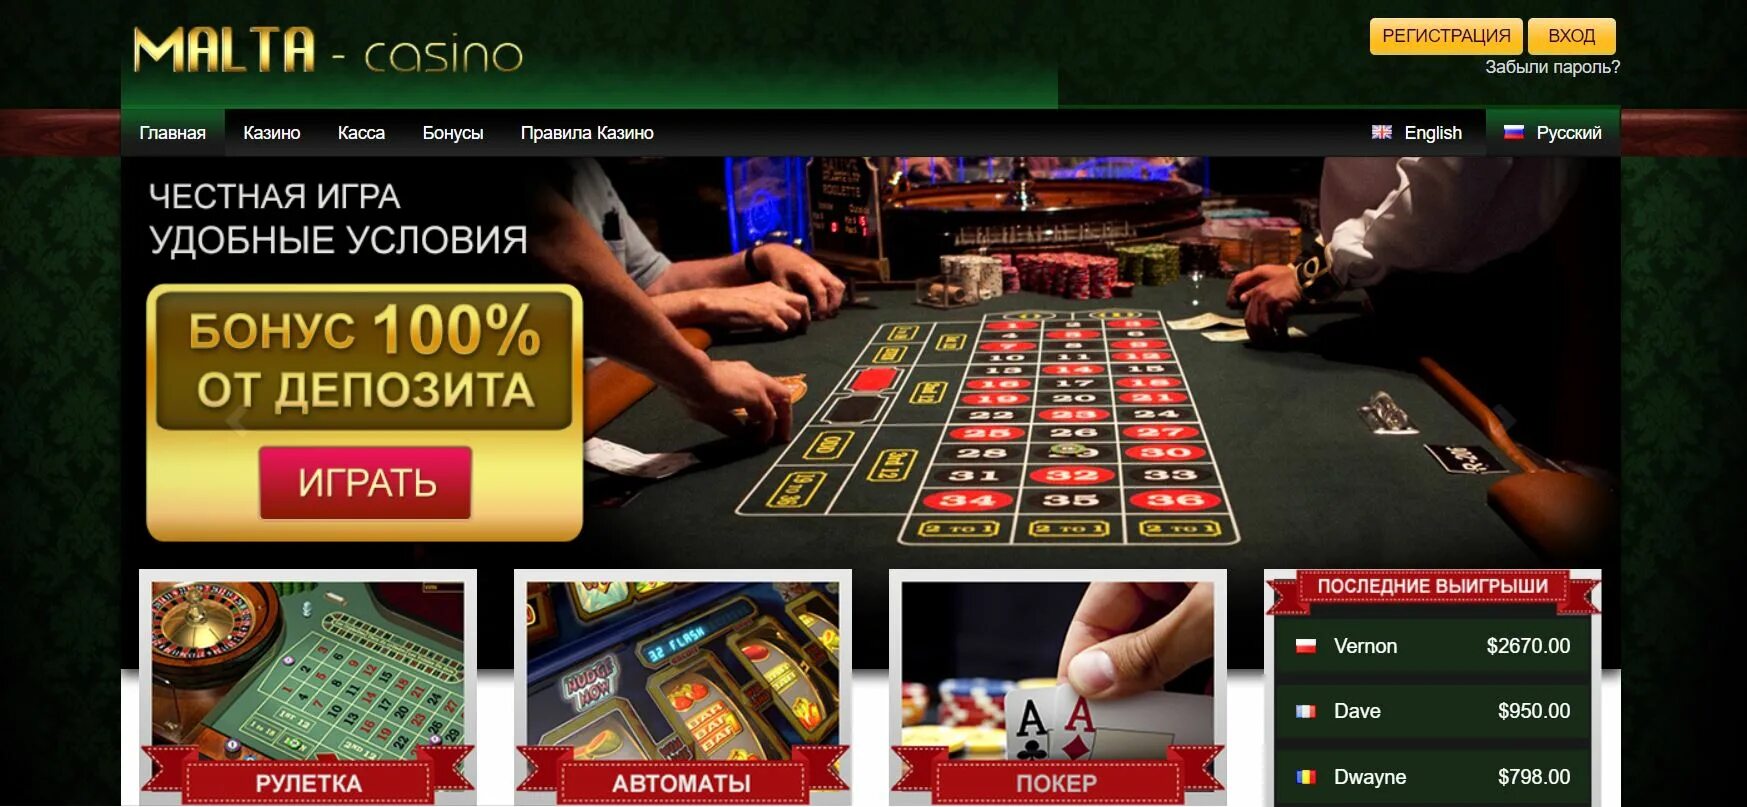 Rox casino отзывы. Выигрыш в казино. Обман интернет казино. Лохотрон интернет казино. Выбор казино.